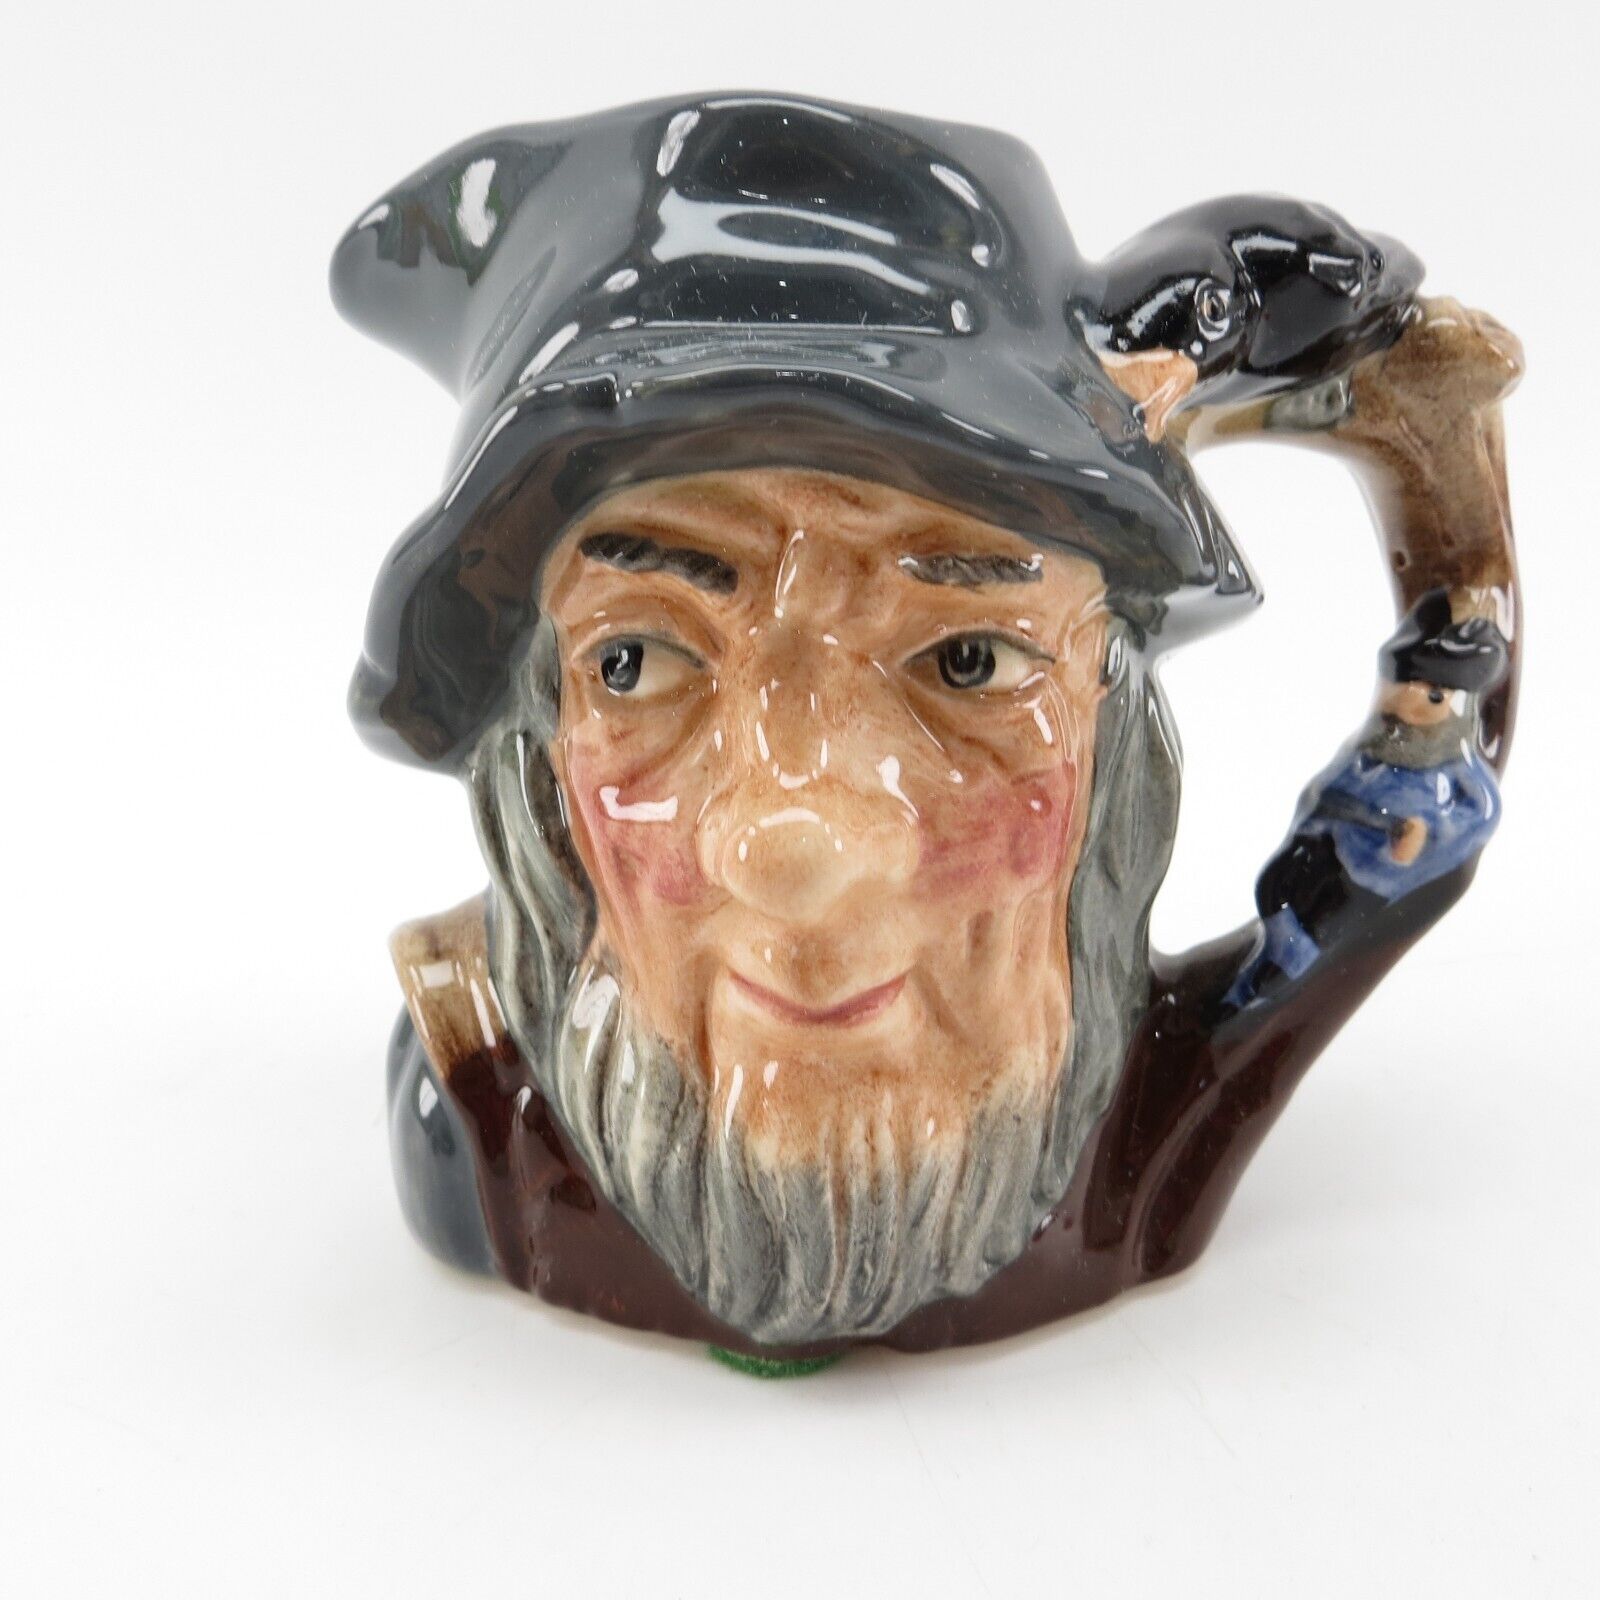 ROYAL DOULTON RIP VAN WINKLE D6463 Character Toby Jug Mug Figurine